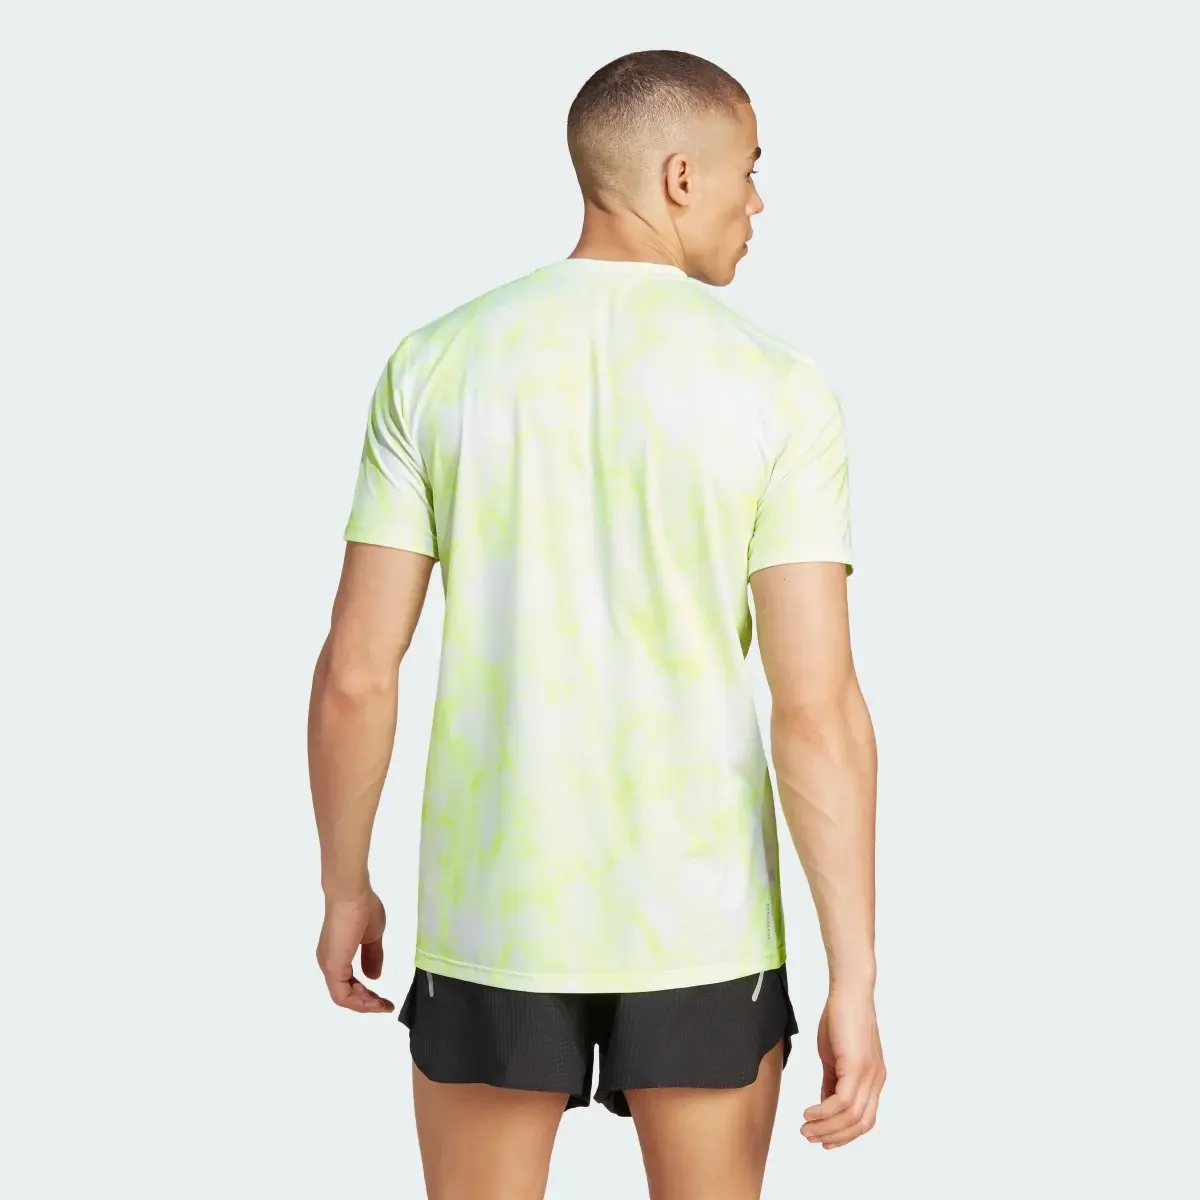 Adidas Own the Run Allover Print T-Shirt. 3